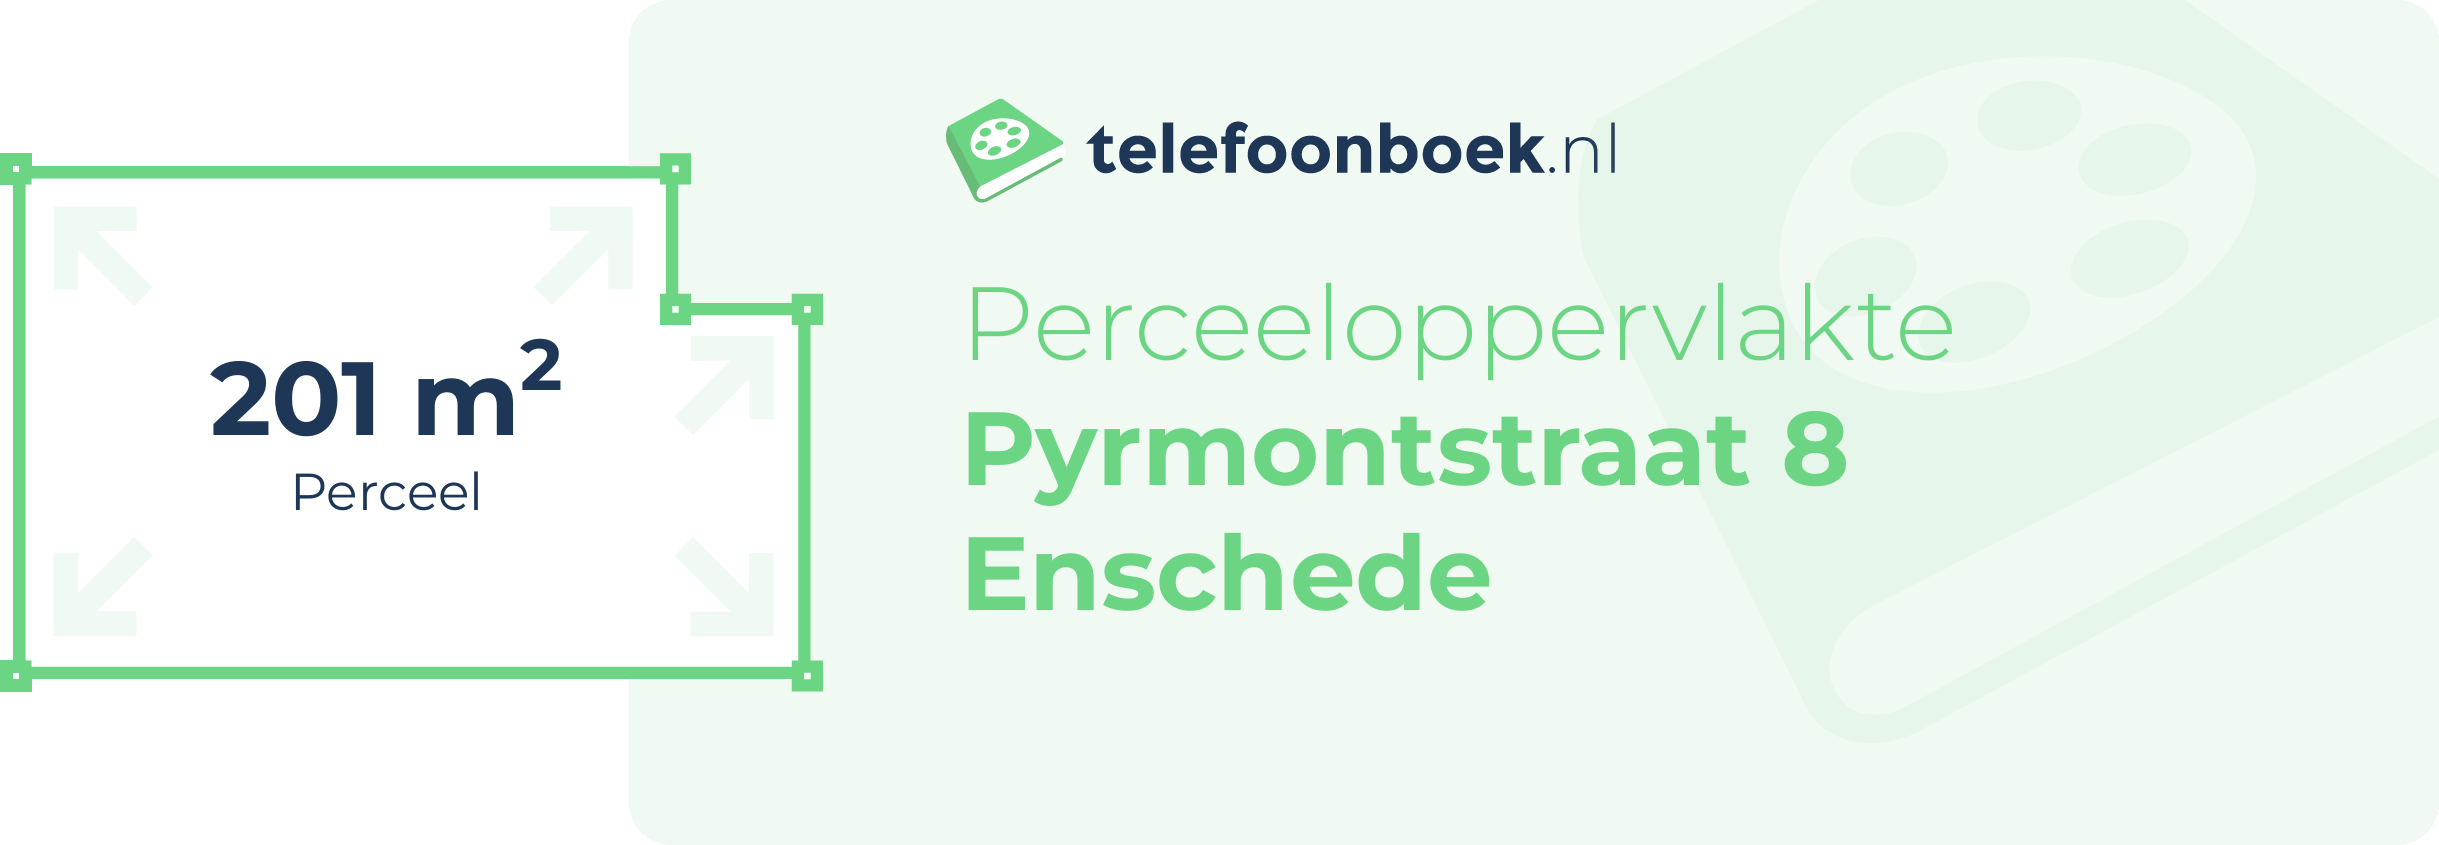 Perceeloppervlakte Pyrmontstraat 8 Enschede